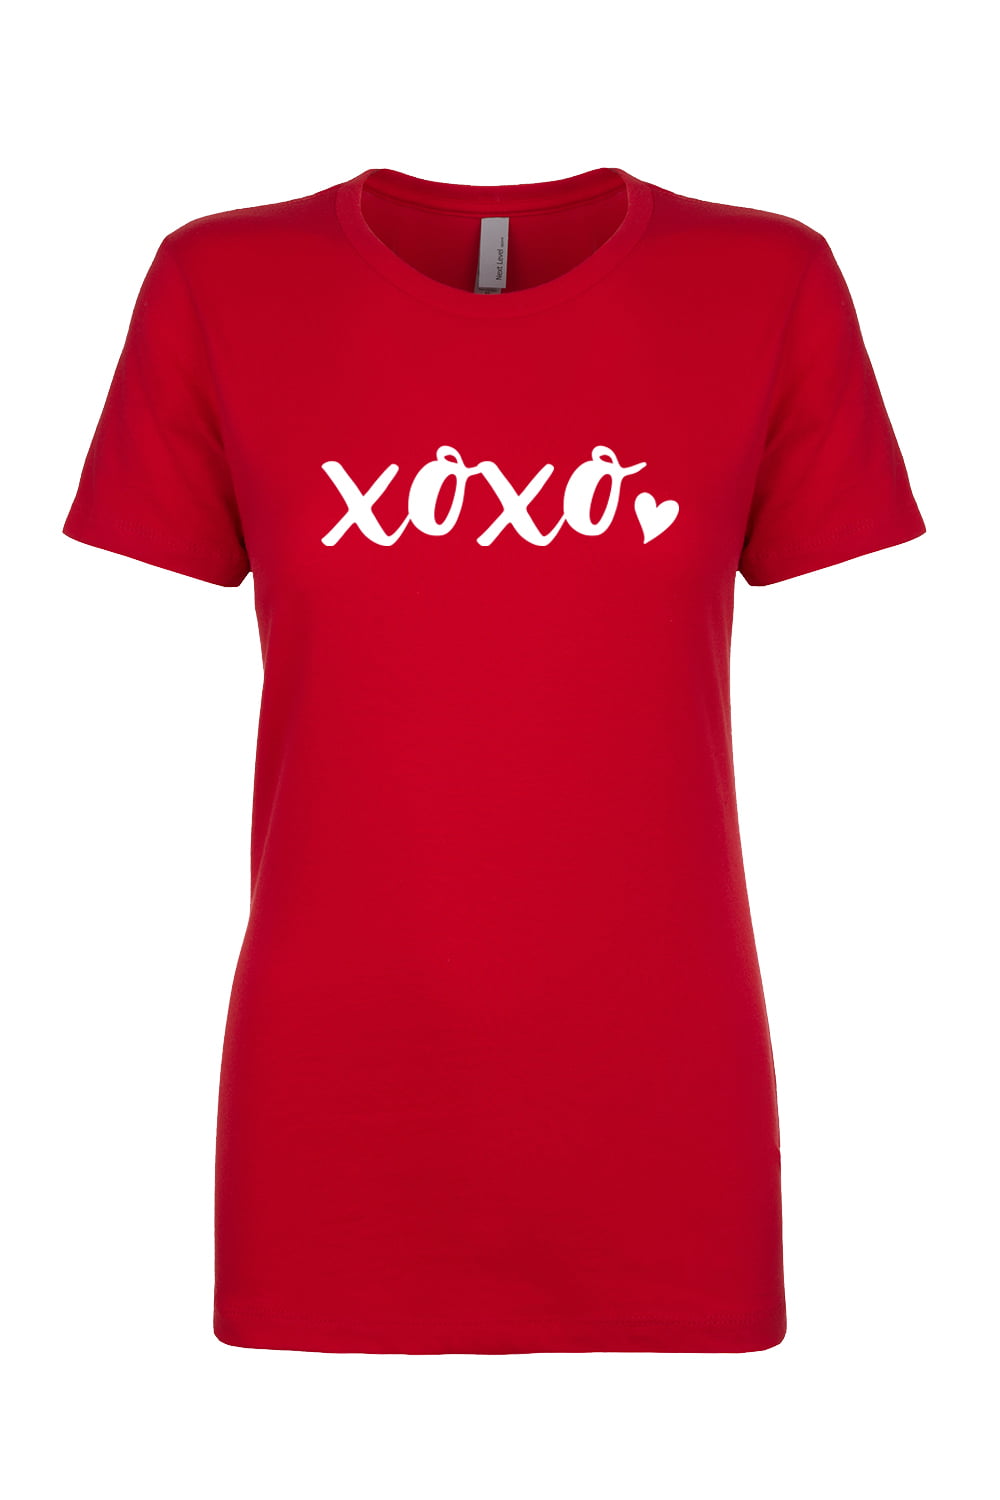 Happy Valentine’s Day Short-Sleeve XOXO Unisex T-Shirt Holiday XOXO Valentine’s Day Gift